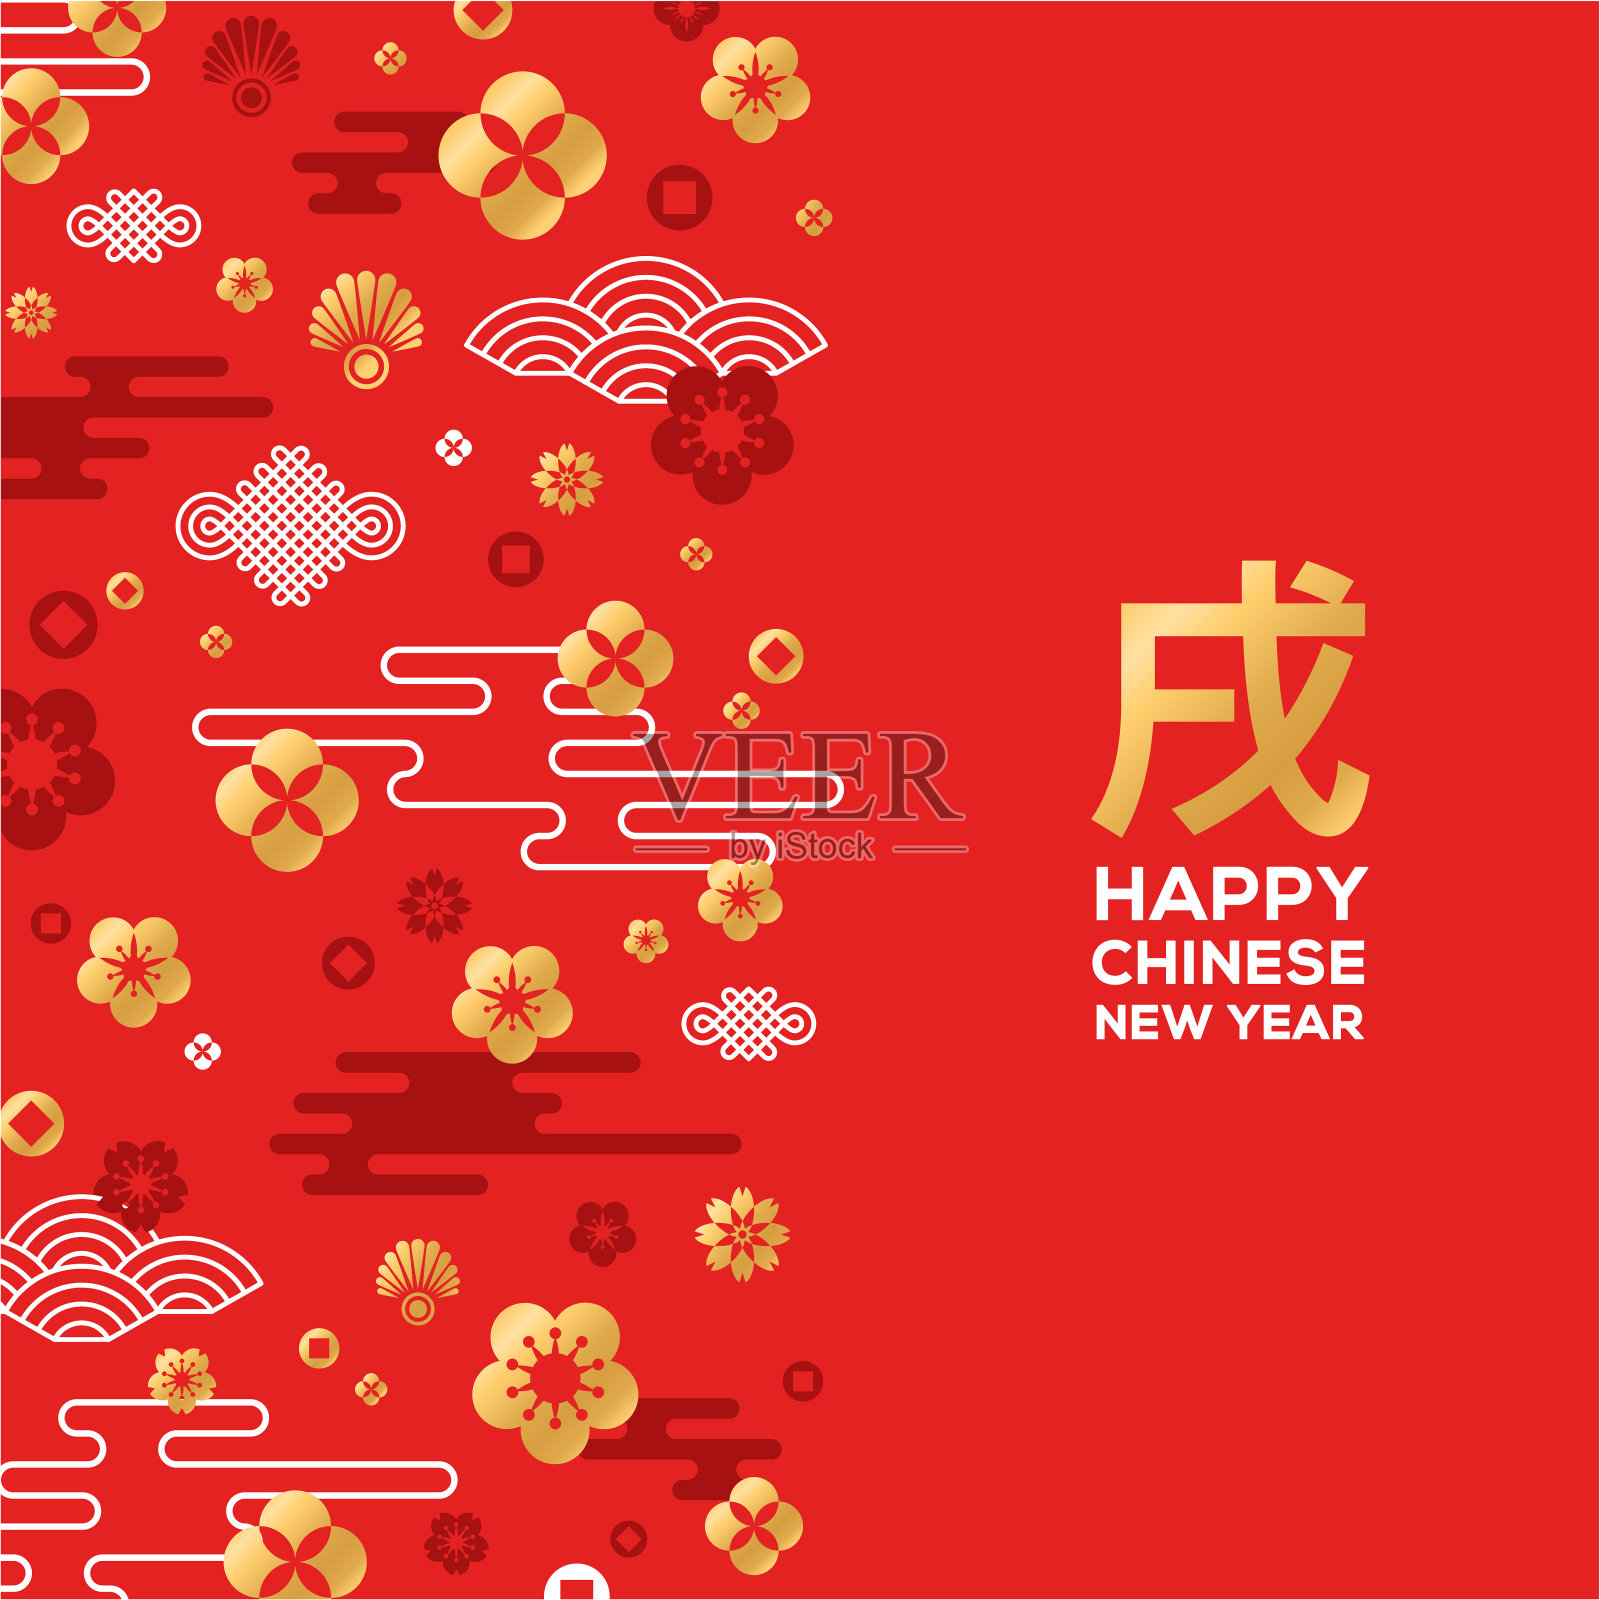 中国新年贺卡与图案的红色设计模板素材